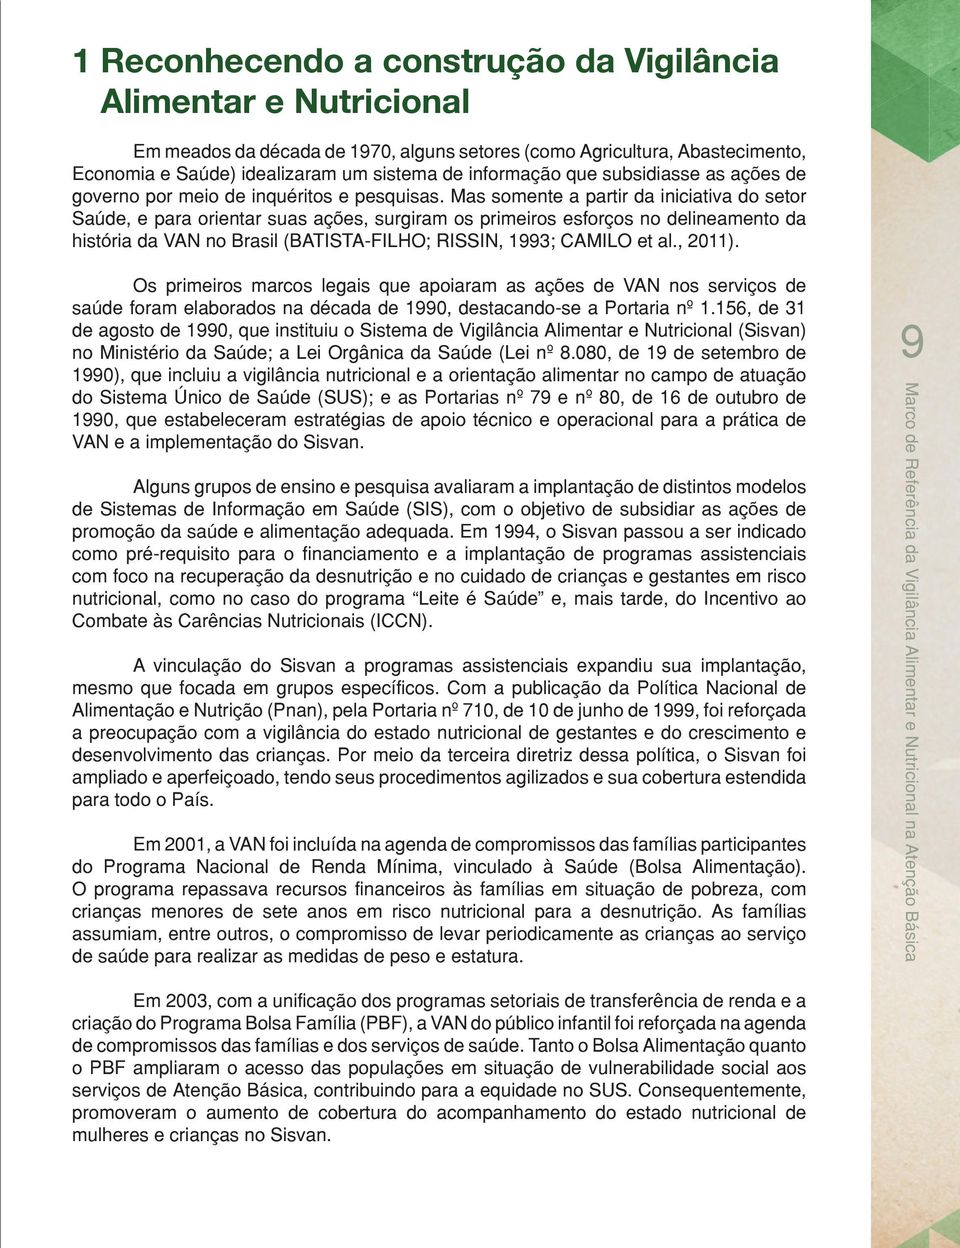 Mas somente a partir da iniciativa do setor Saúde, e para orientar suas ações, surgiram os primeiros esforços no delineamento da história da VAN no Brasil (BATISTA-FILHO; RISSIN, 1993; CAMILO et al.